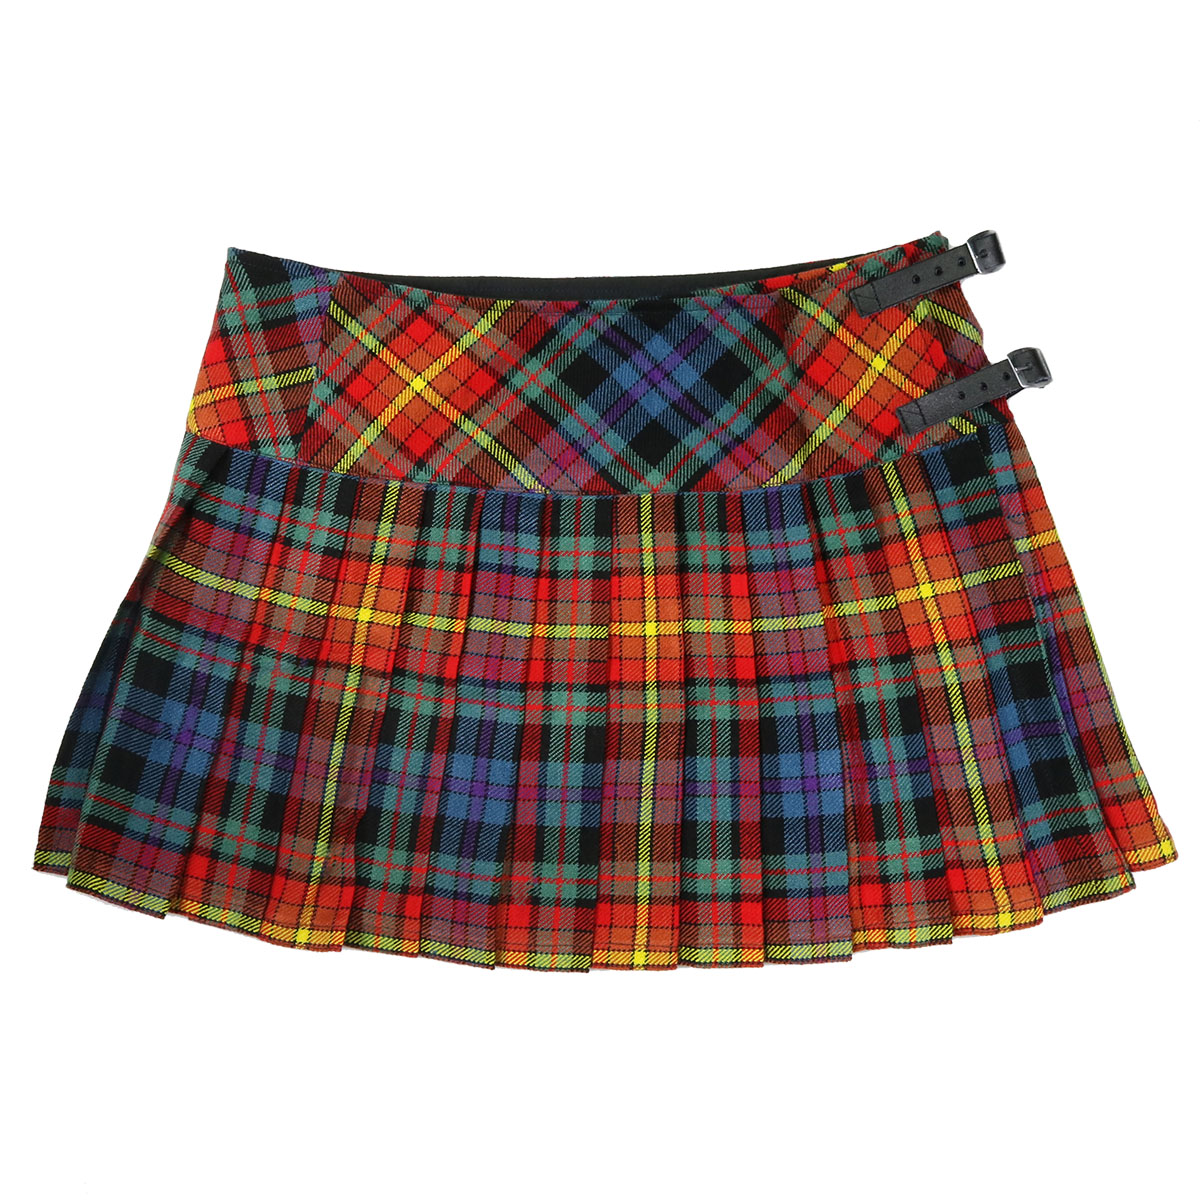 Scottish tartan kilt with a PRIDE LGBTQ+ Tartan Sporran, featuring a stylish sporran.